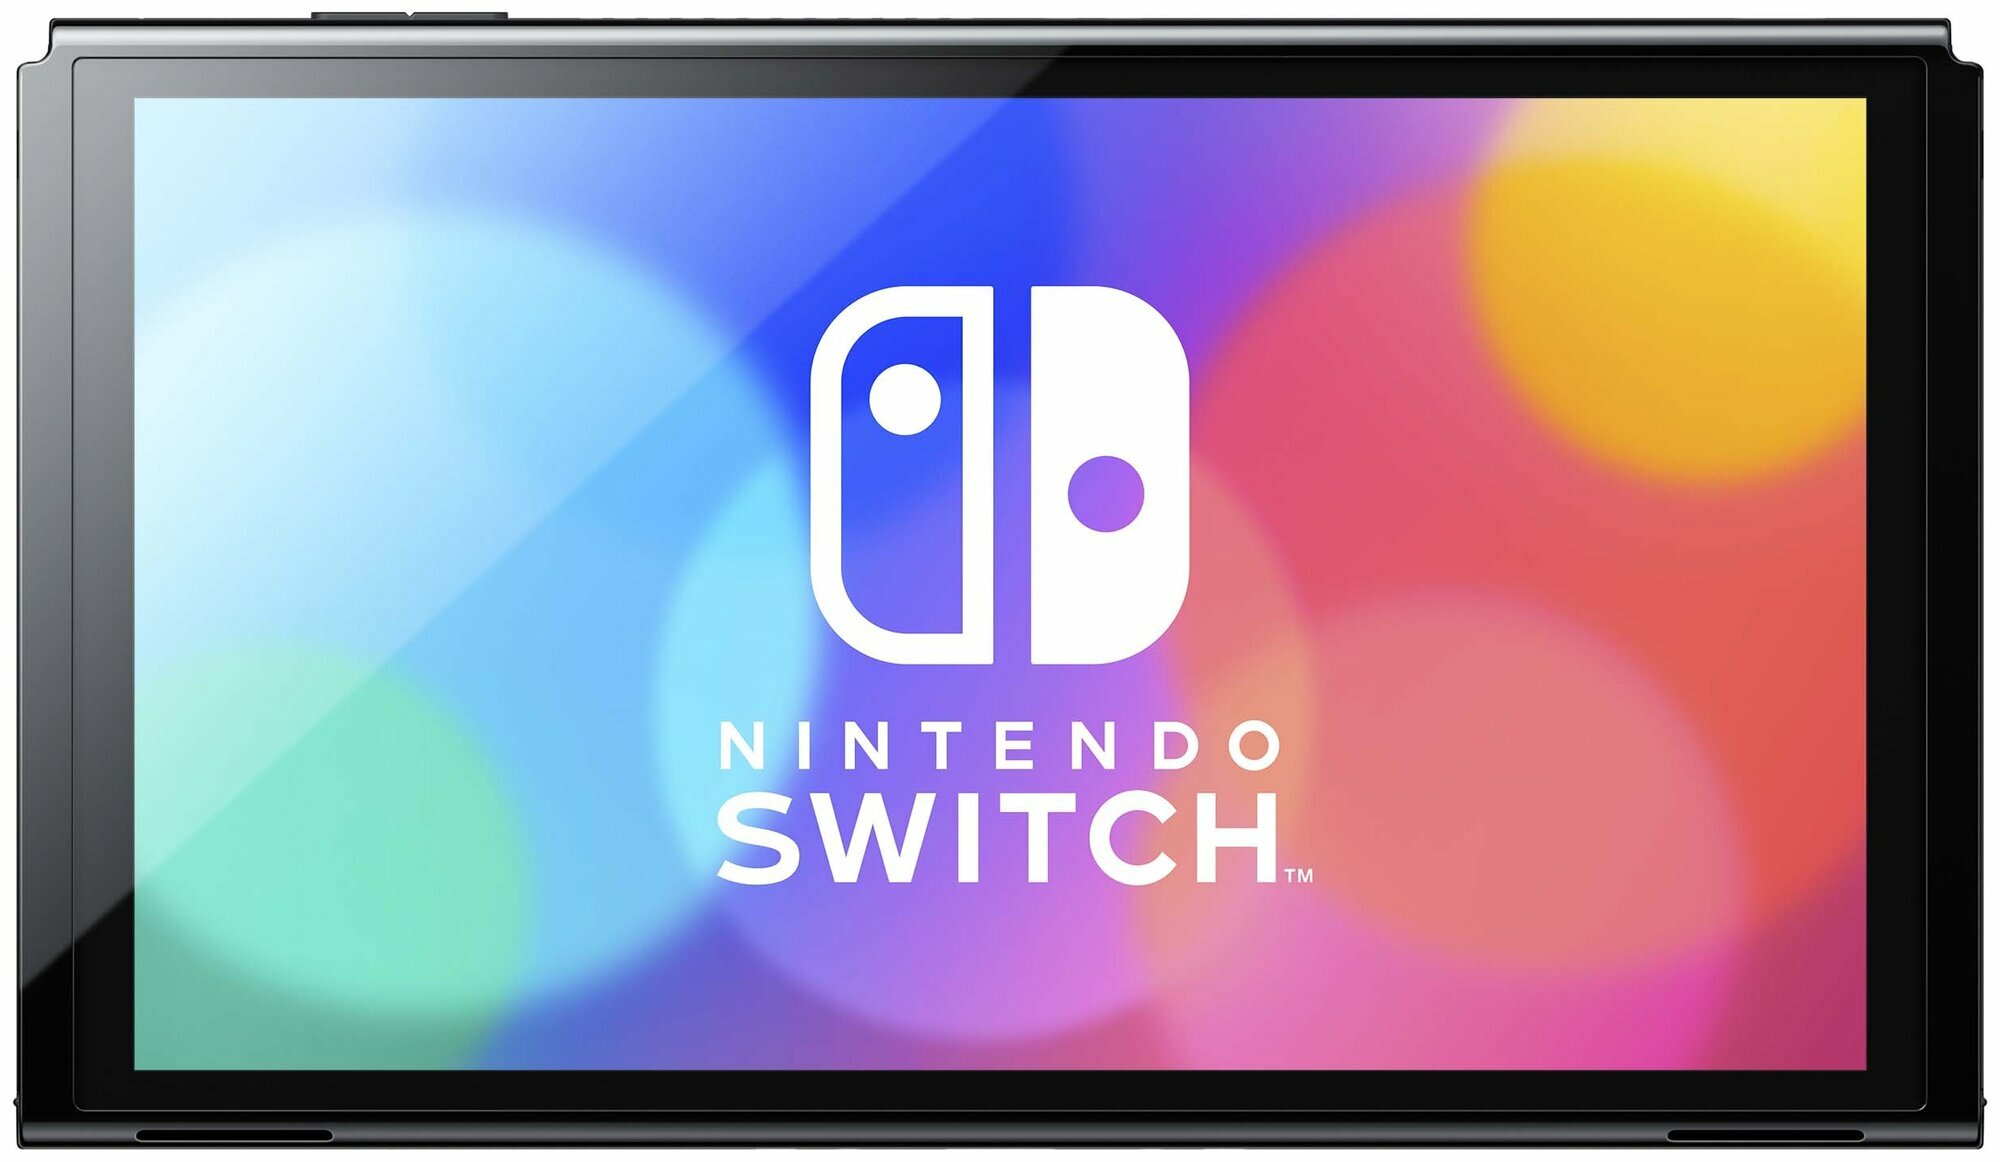 Игровая приставка Nintendo Switch OLED 64 ГБ, без игр, неоновый синий/неоновый красный